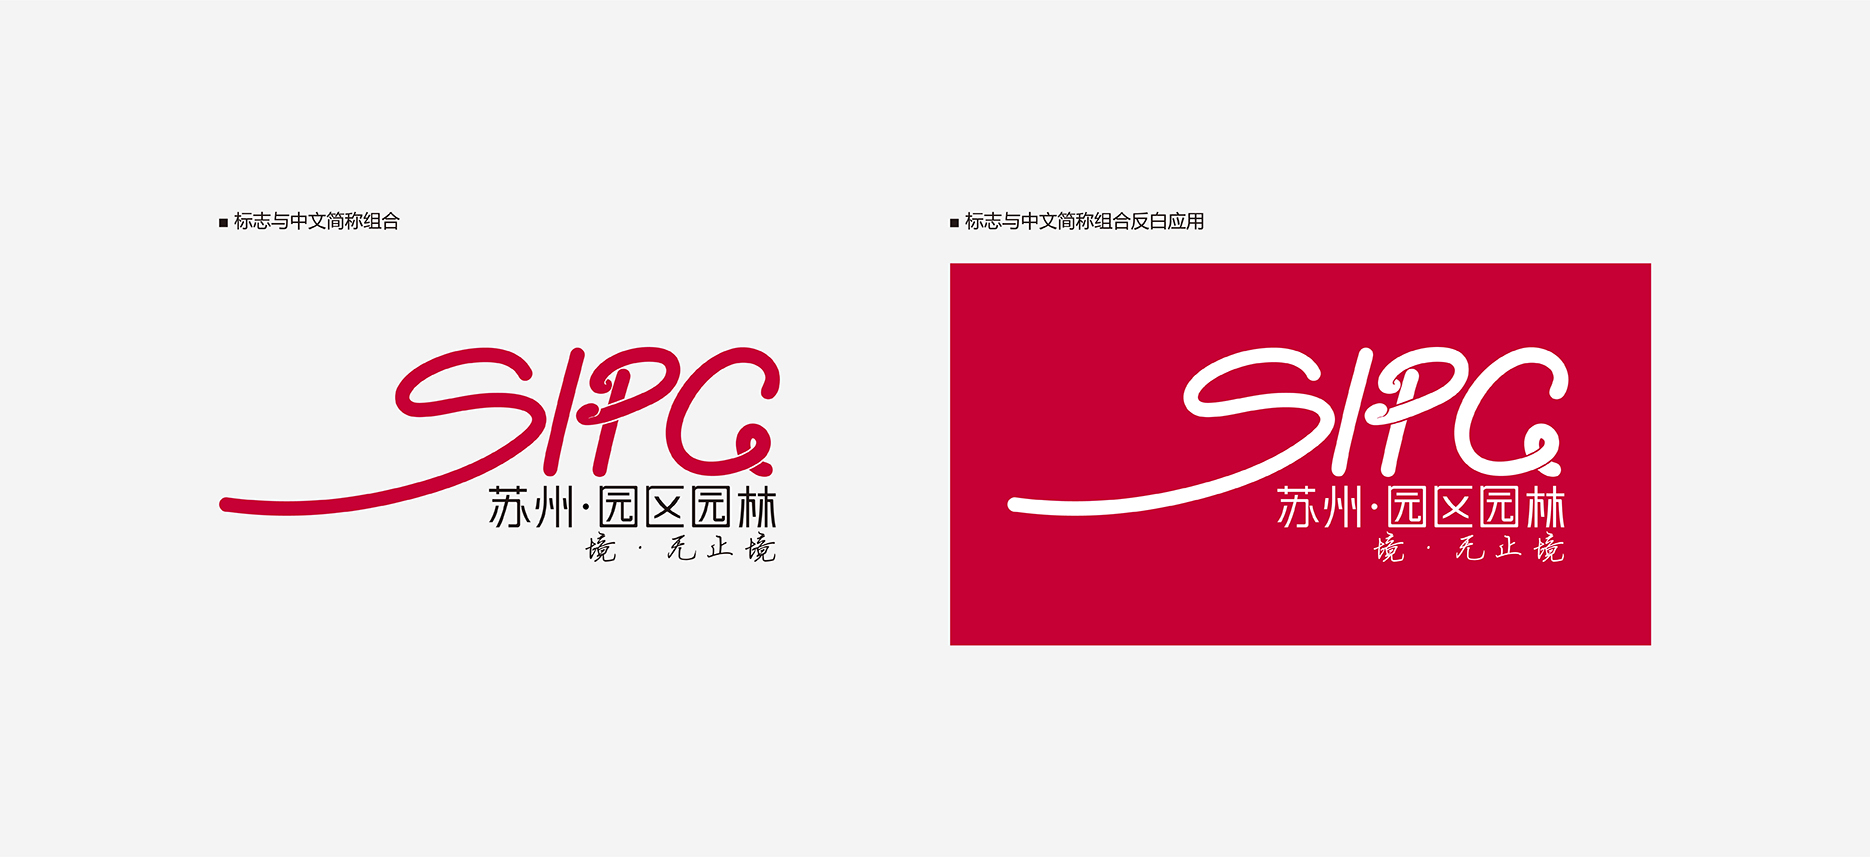 SIPG苏州园区园林：标志与中文简称组合